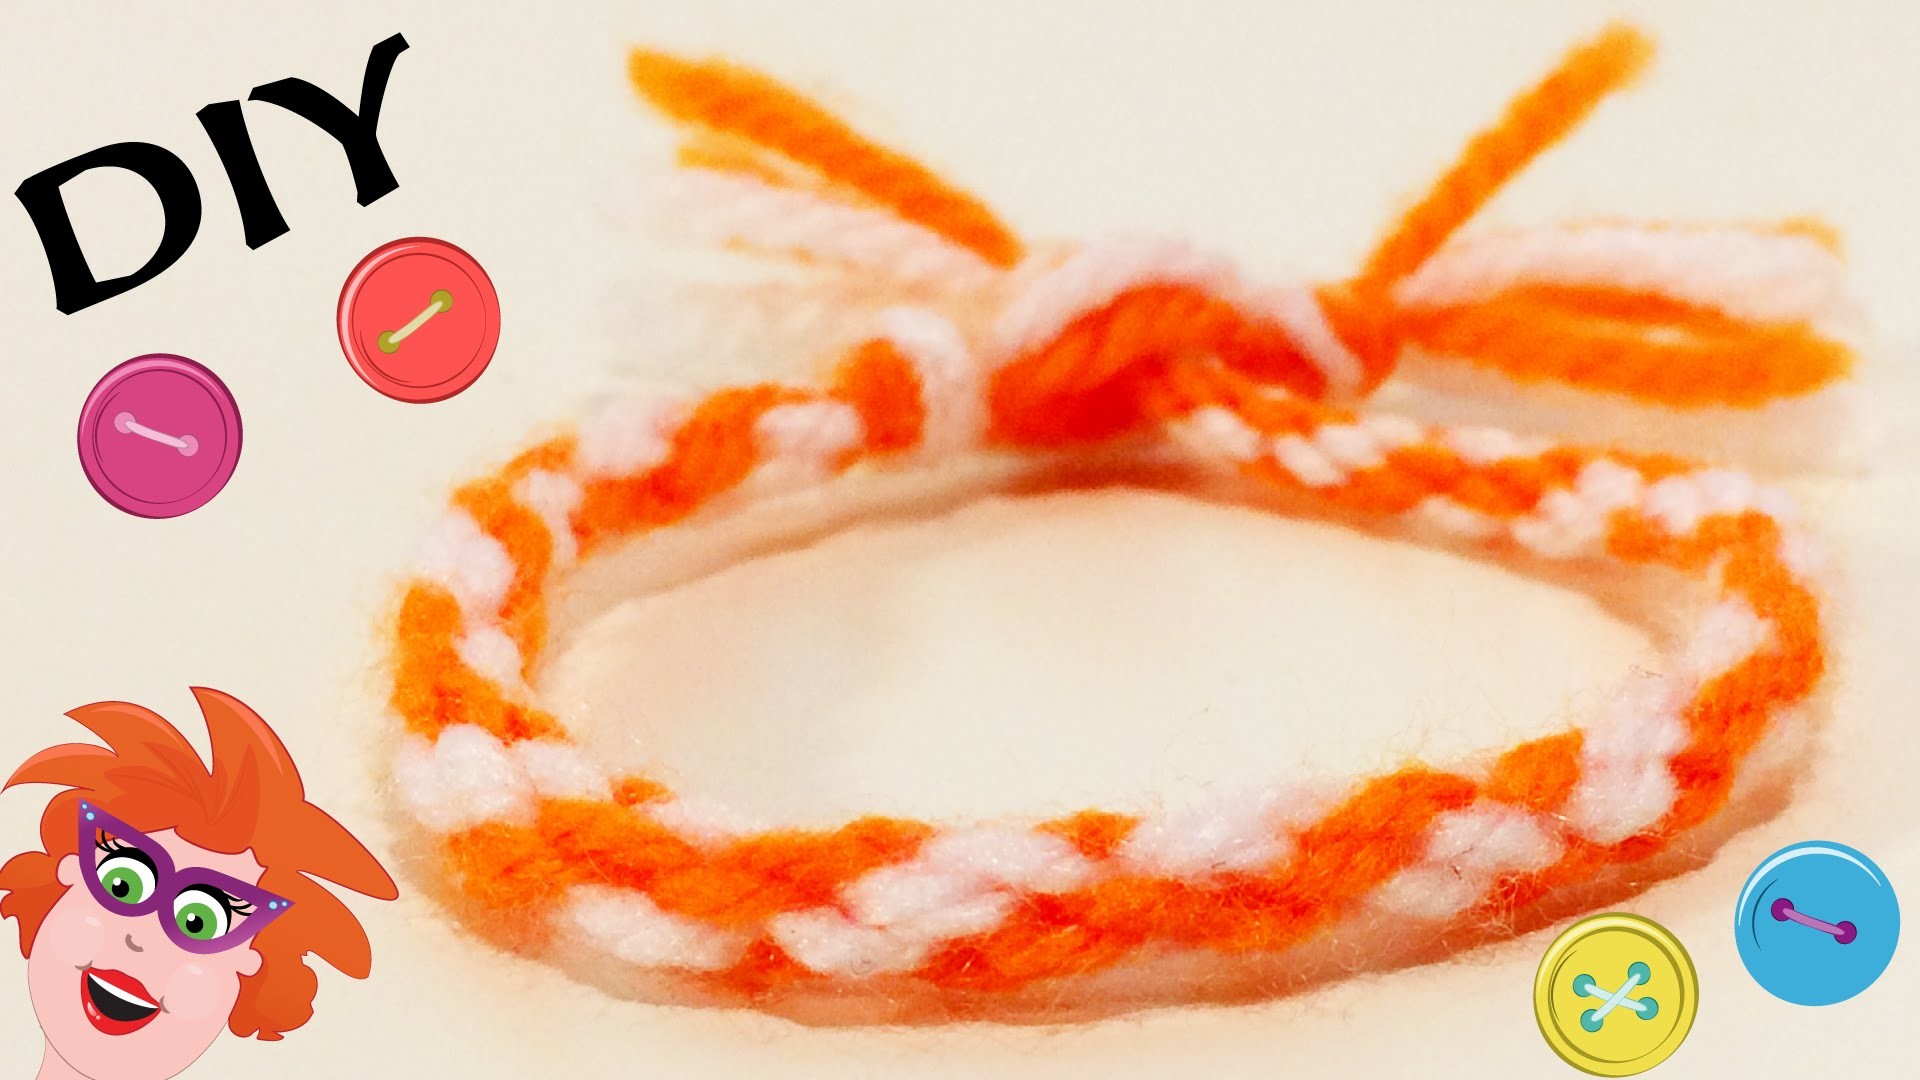 DIY Friendship Bracelets - Zelf voetbalarmbandjes maken met touw